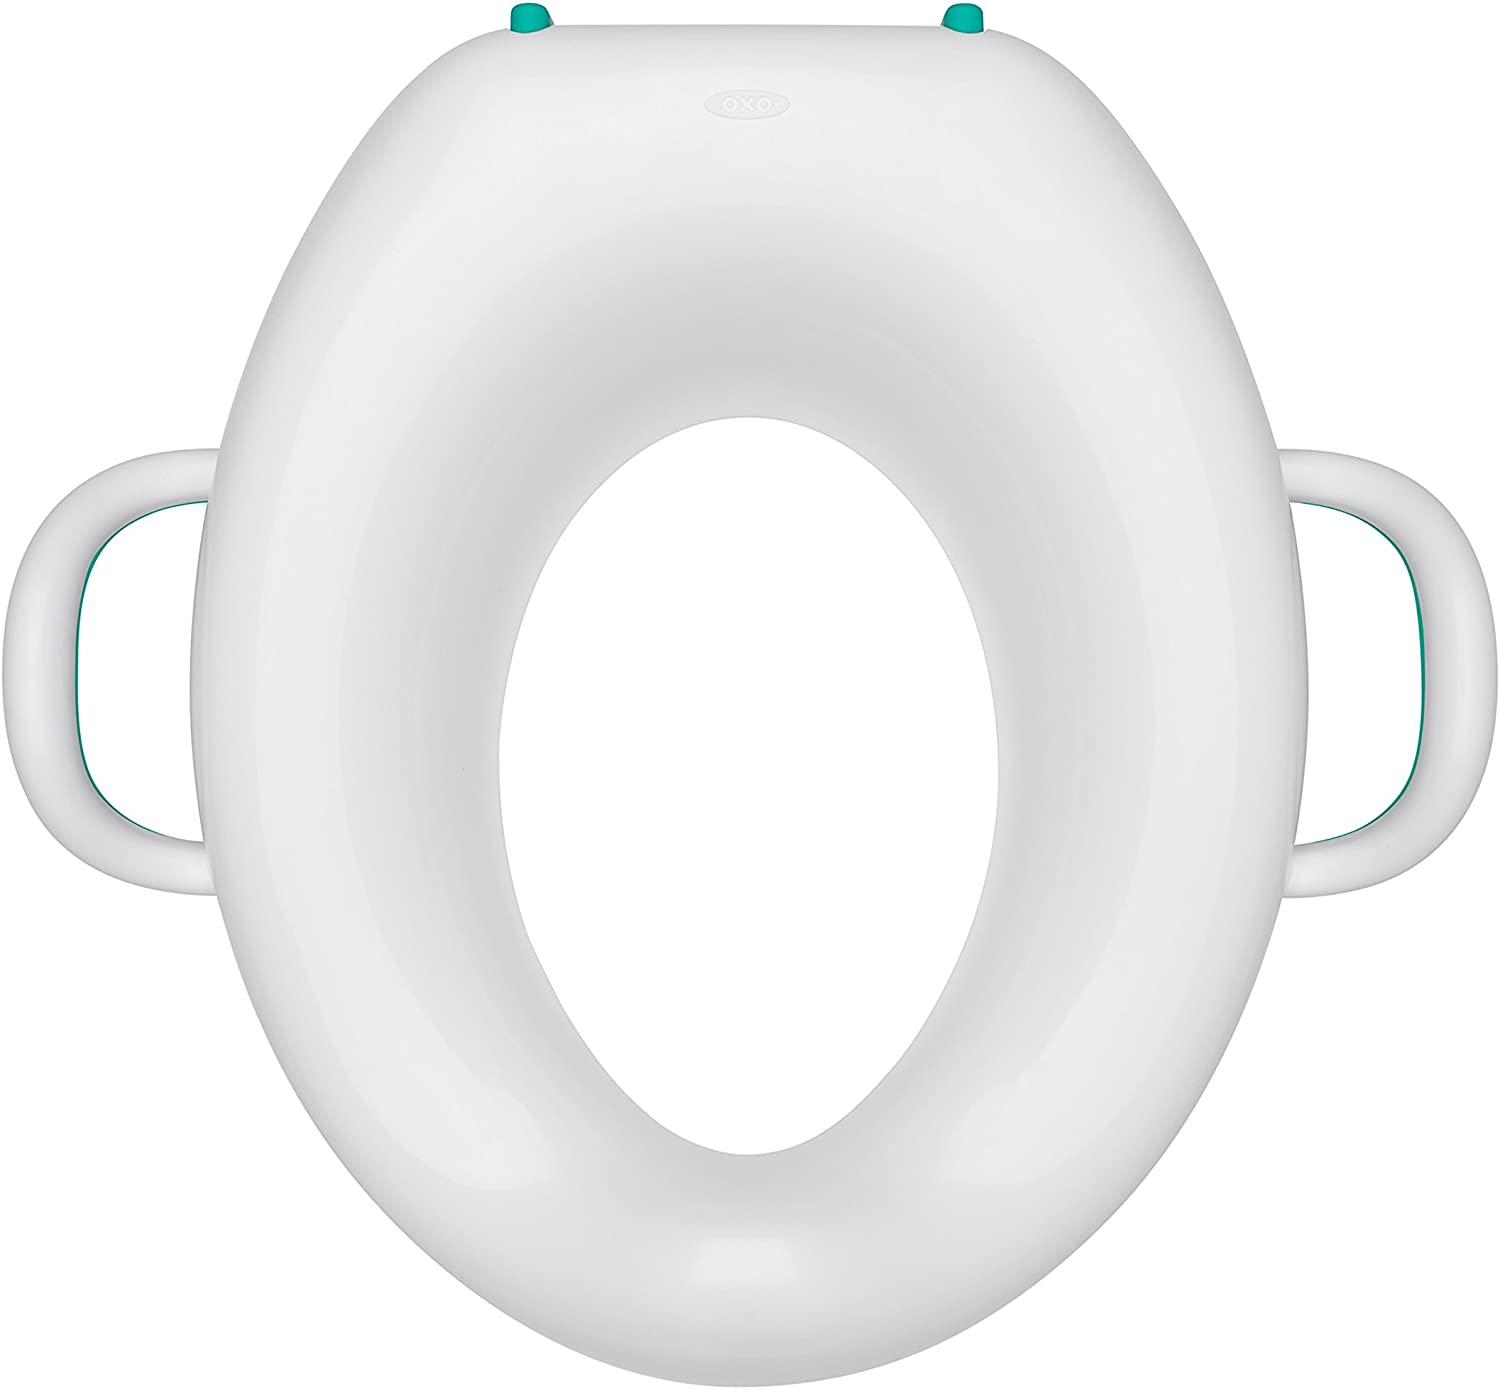 OXO Tot(オクソー トット) トイレトレーニングシートの商品画像6 